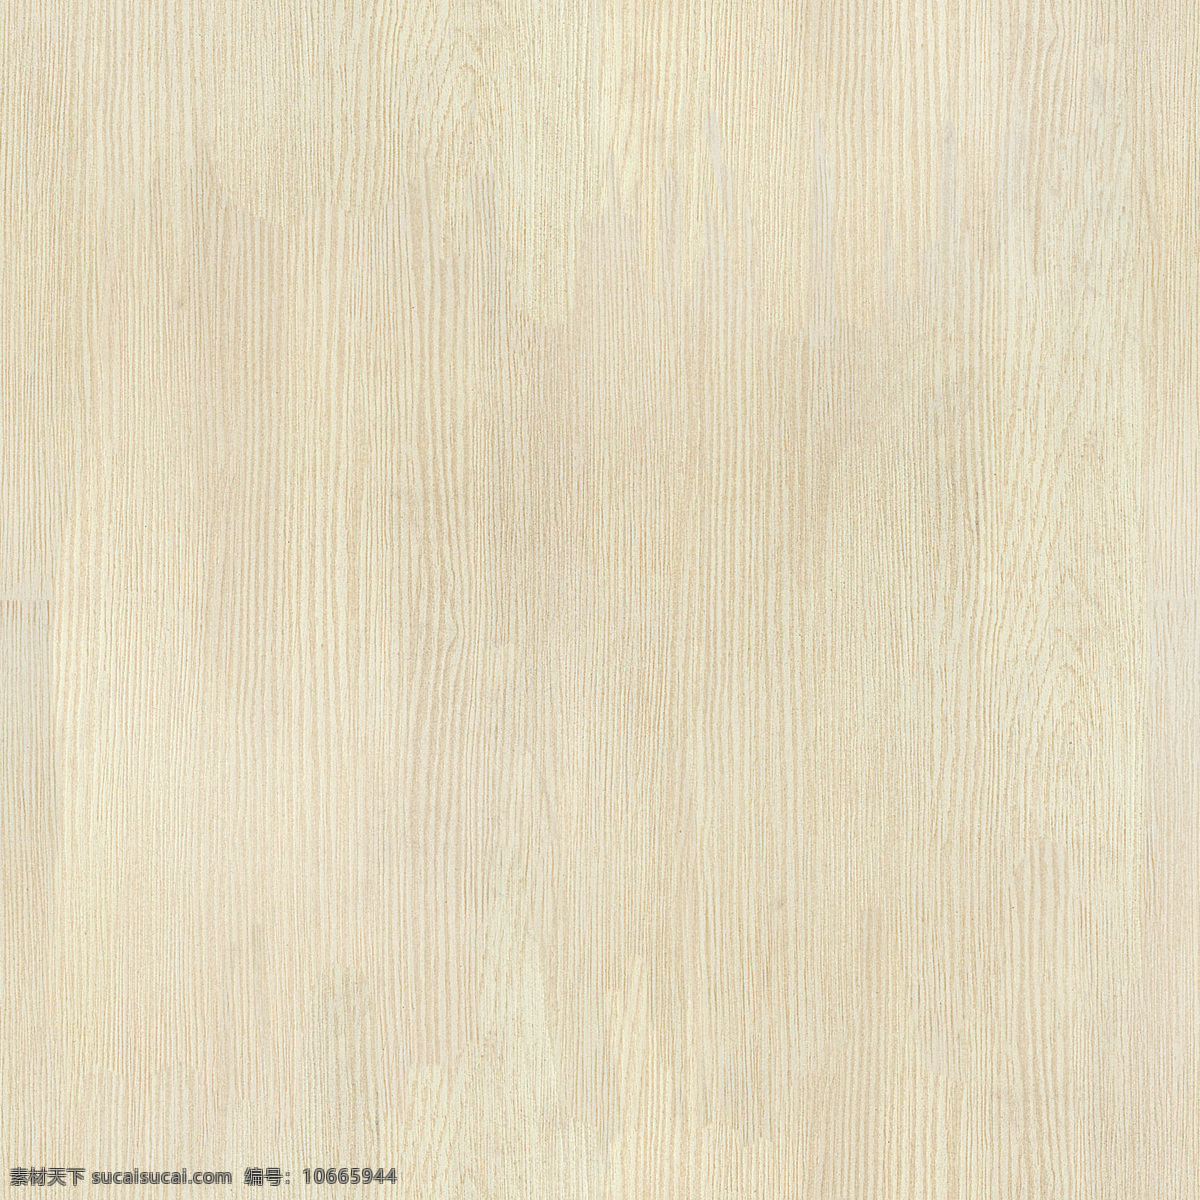 木质 材质 贴图 乳白色 高清 材质贴图 背景底纹 底纹边框